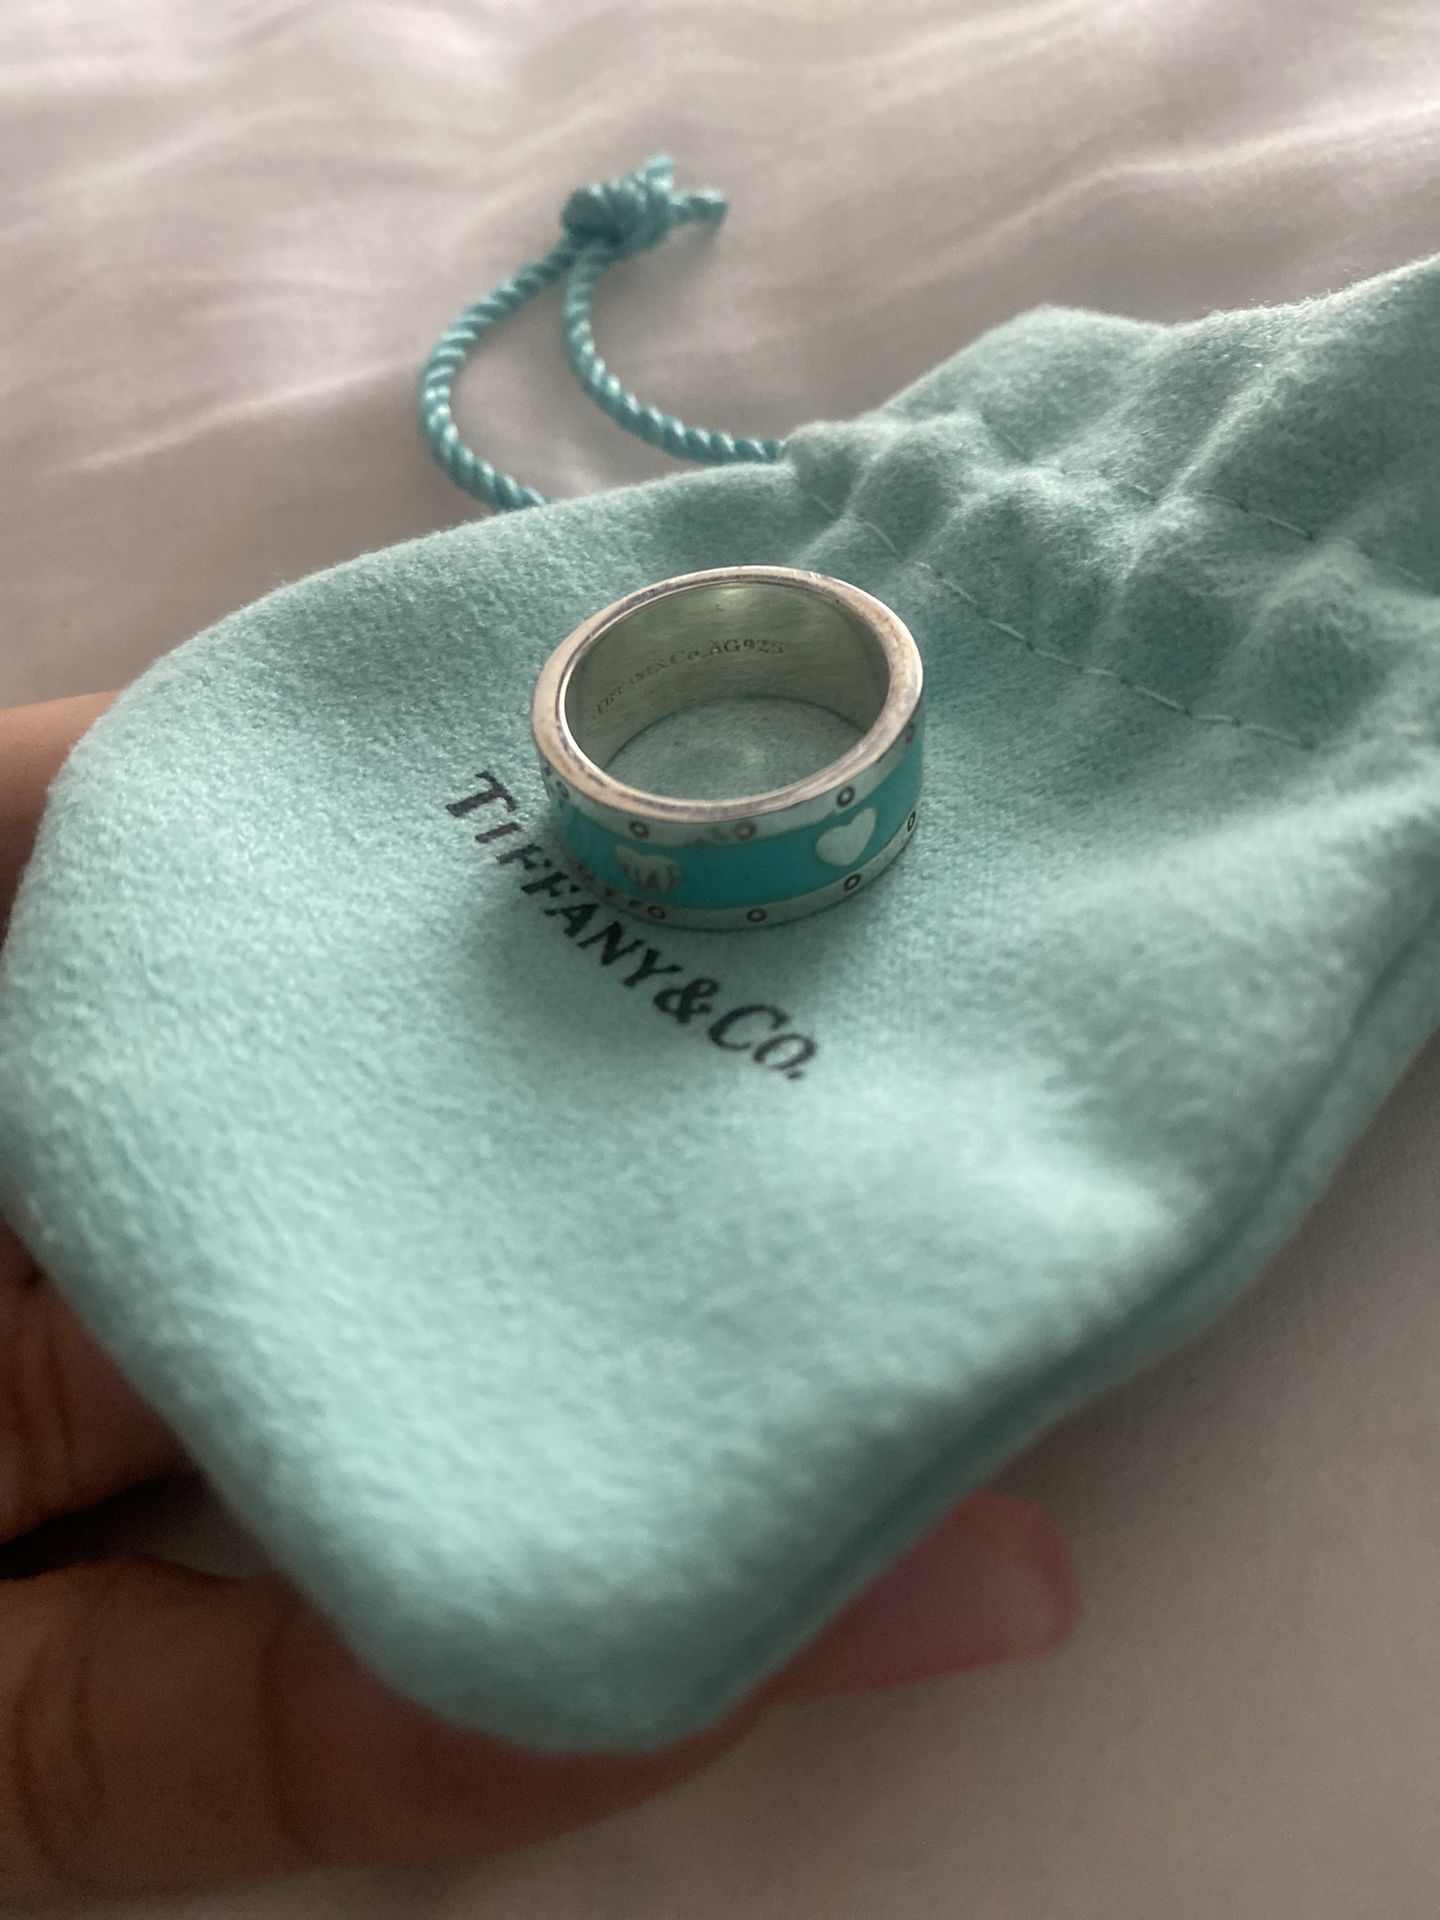 Tiffany heart Ring 